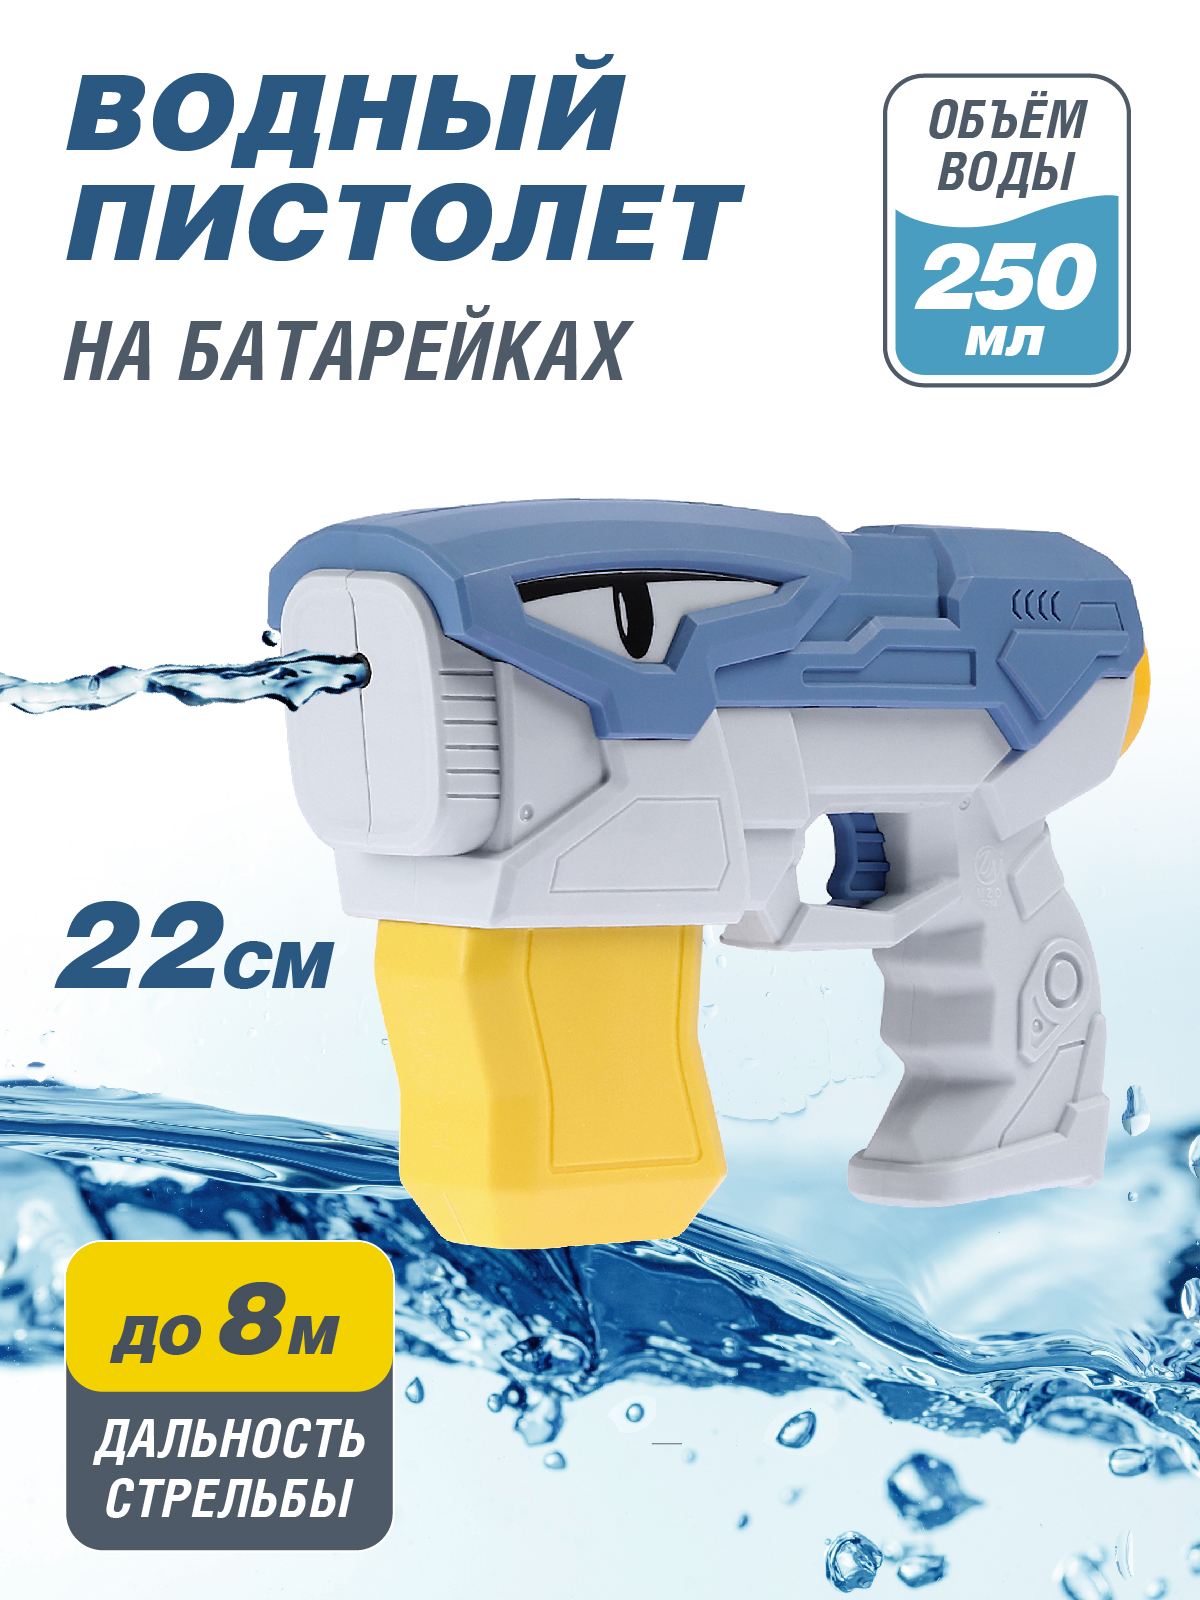 Водяное игрушечное оружие на батарейках, JB0211501 водяное игрушечное оружие пистолет рюкзак водный бой игры с водой jb0211519